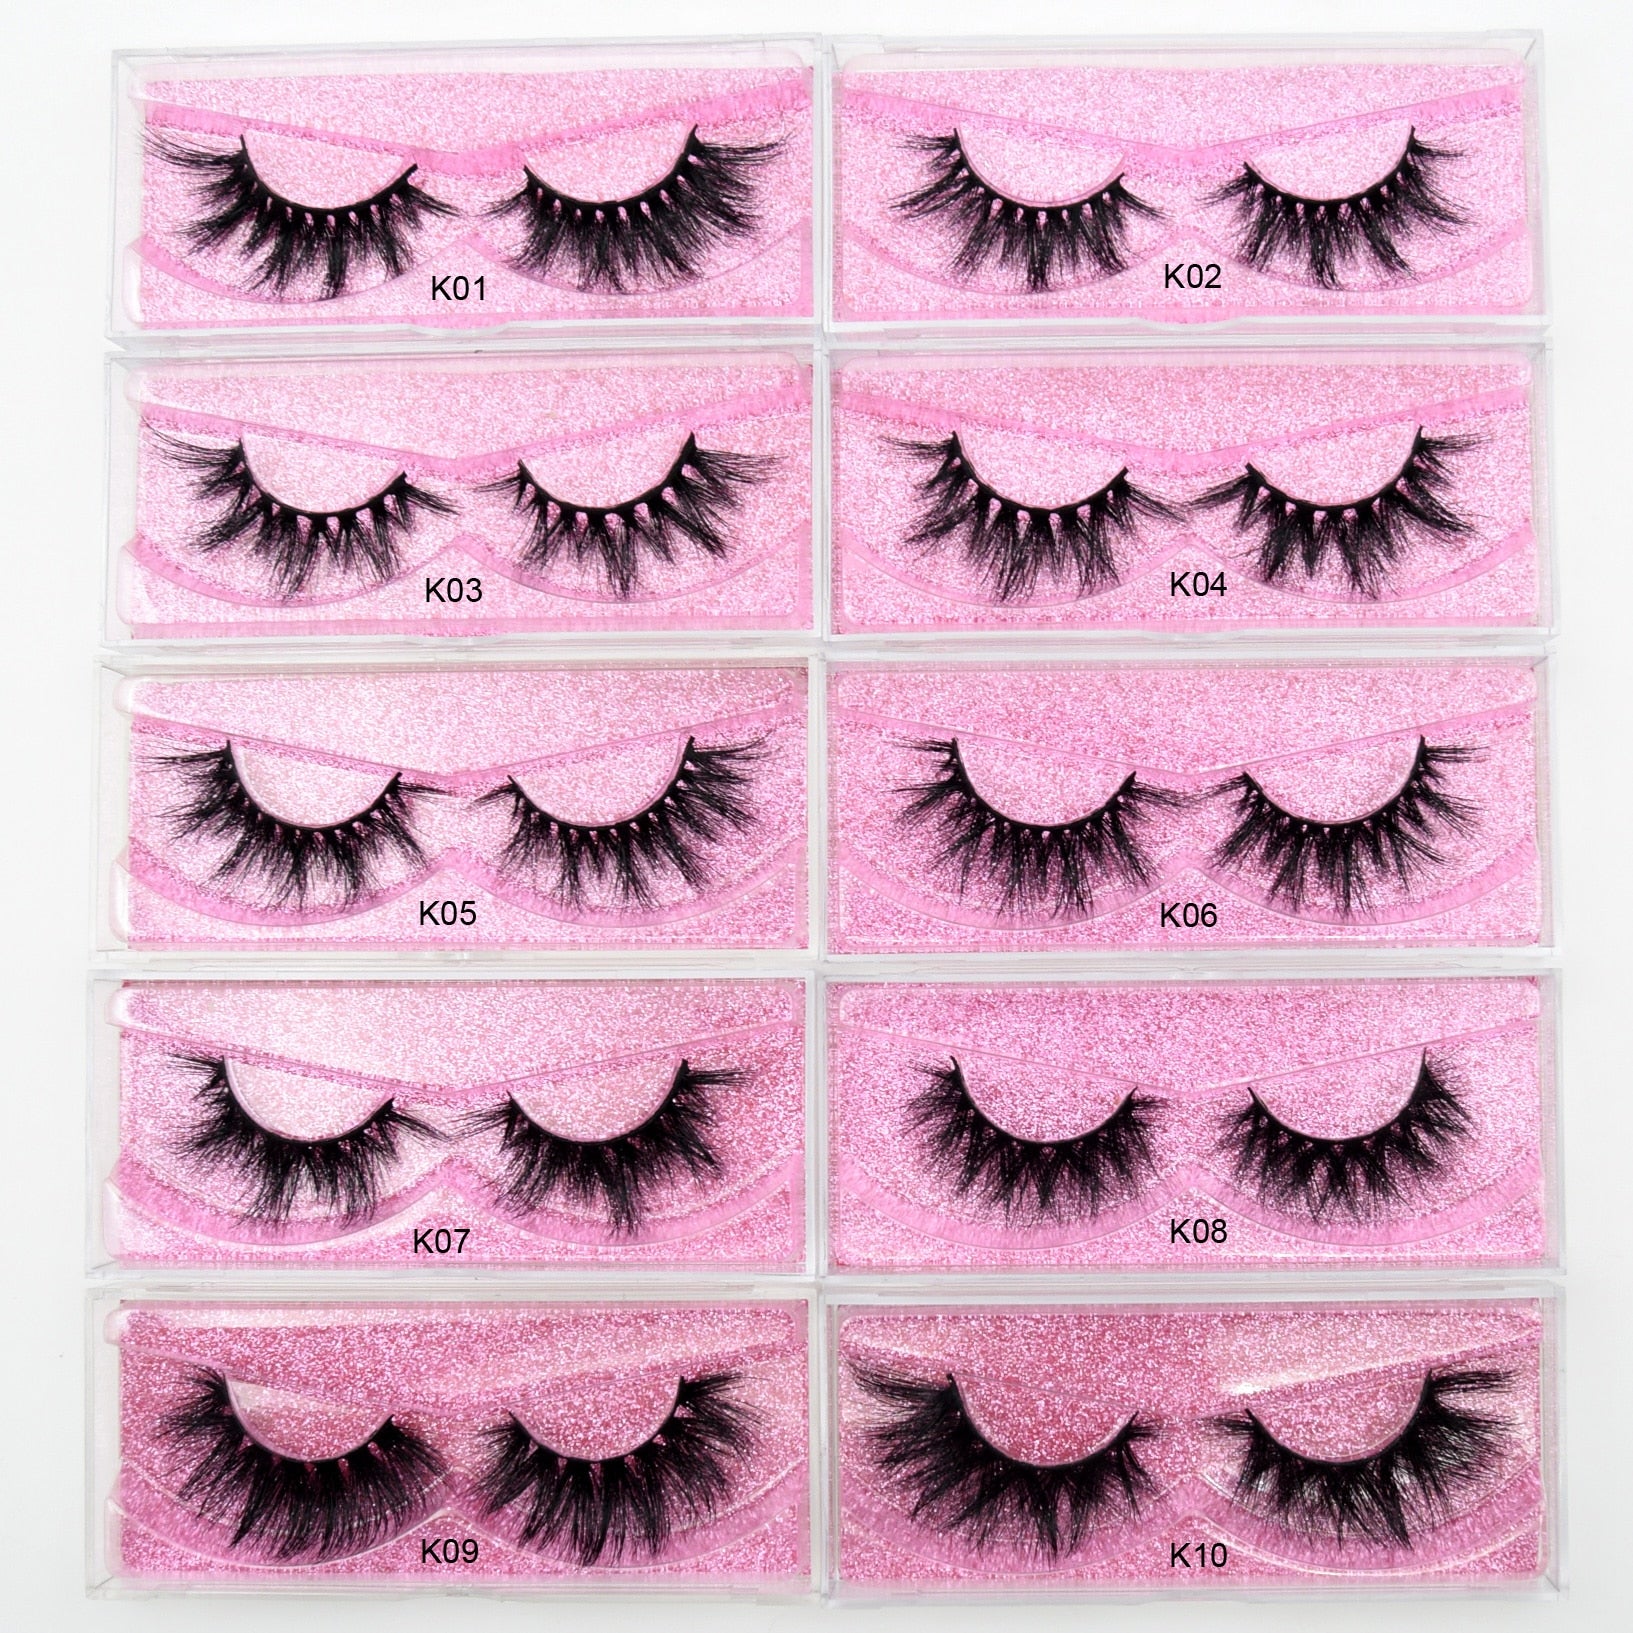 Visofree Mink Lashes 3D Mink Eyelashes 100% Cruelty free Lashes Handmade Reusable Natural Eyelashes Popular False Lashes Makeup